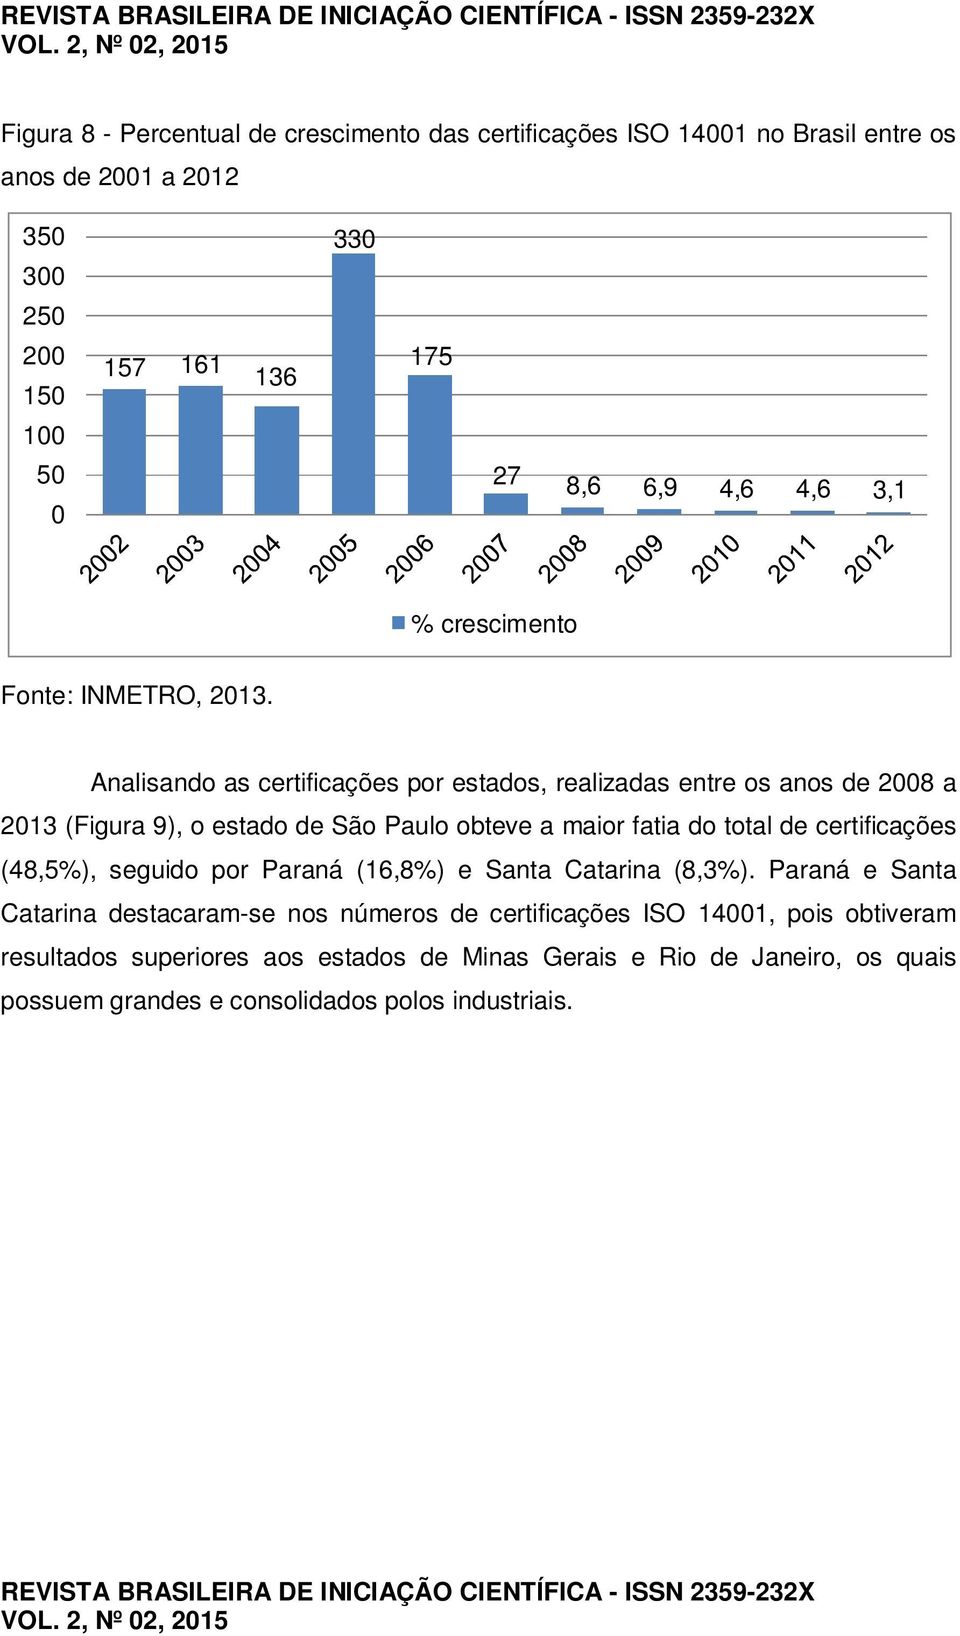 Analisando as certificações por estados, realizadas entre os anos de 2008 a 2013 (Figura 9), o estado de São Paulo obteve a maior fatia do total de certificações